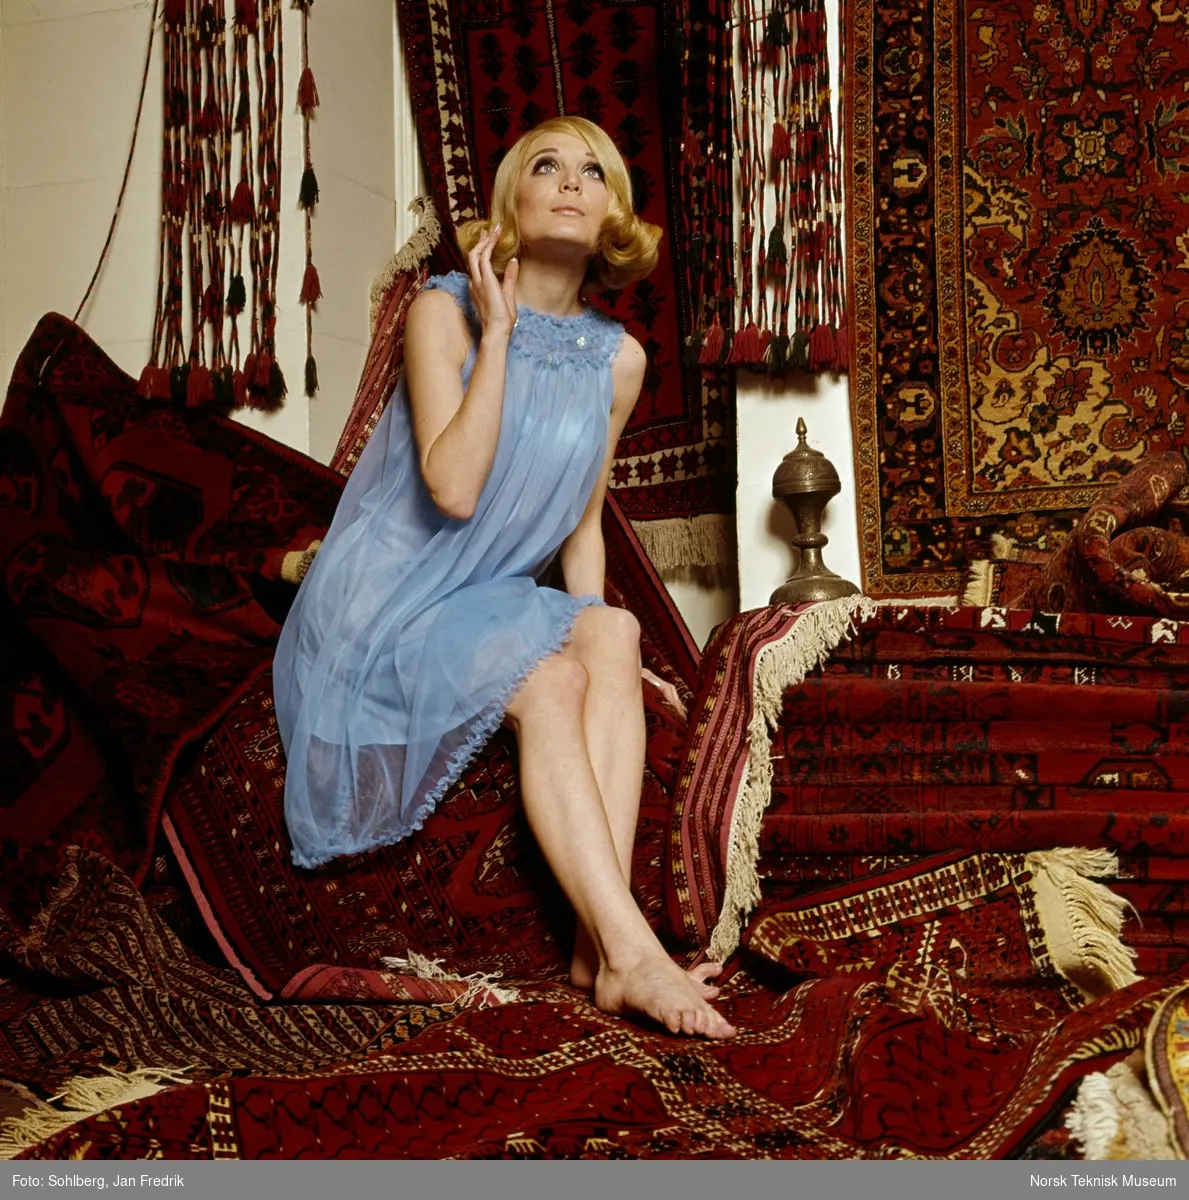 Tidlig norsk motefotografi. Kvinnelig modell poserer i lyseblå nattkjole blandt orientalsk- inspirert interiør.